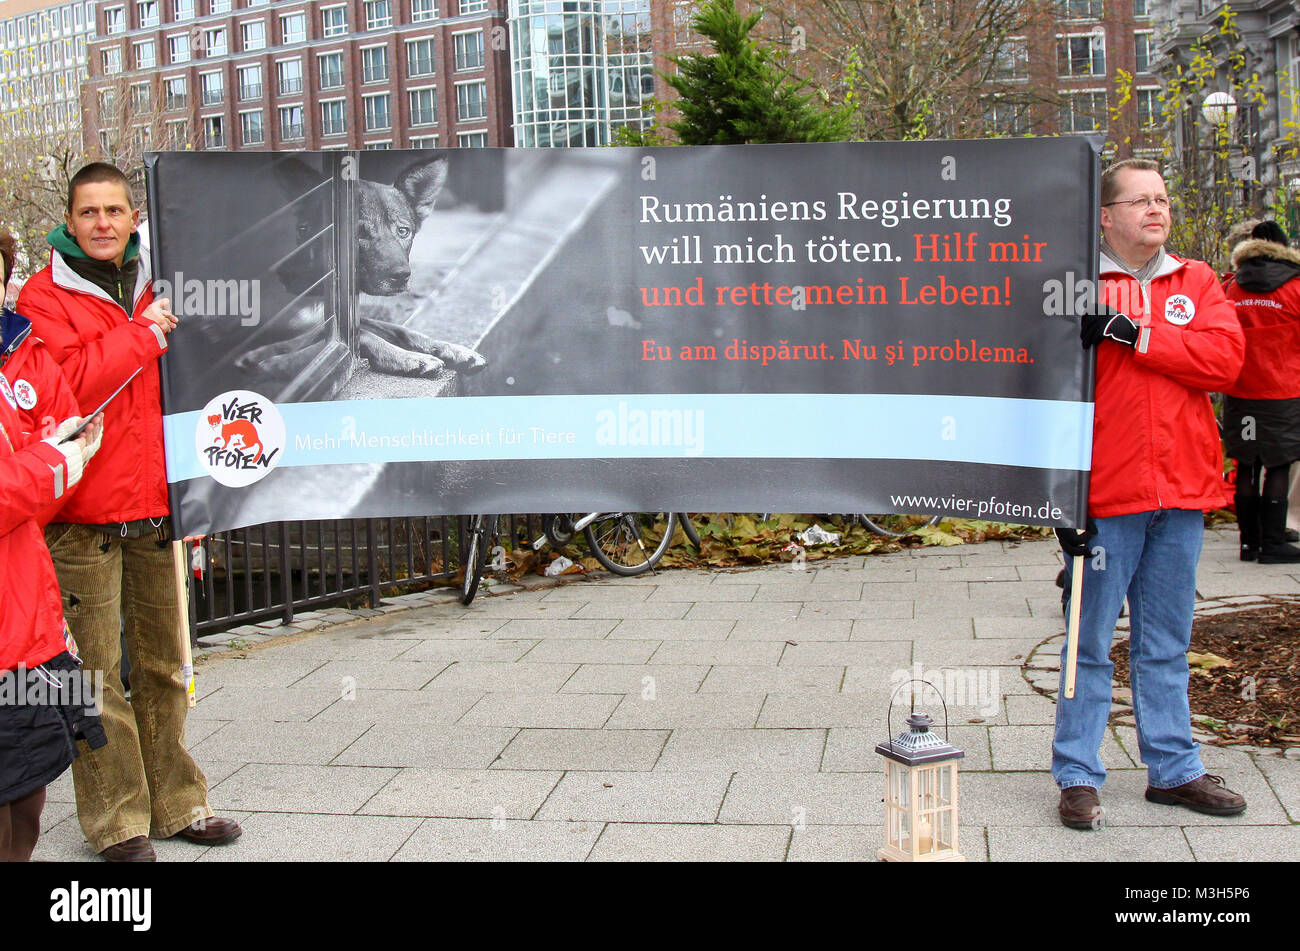 Protestaktion vor dem Rumaenischen Konsulat in Hamburg gemeinsam mit VIER PFOTEN gegen das am 22.11.2011 vom rumaenischen Parlament beschlossene moerderische Gesetz PL 912, das die skrupellose Toetung von Straßenhunden legalisiert.VIER PFOTEN wird diesen Protest dem rumänischen Präsidenten Traian Basescu übergeben, da nur er das Gesetz jetzt noch kippen kann.  Rumaenien hat ein Gesetz erlassen, das die Massentoetung von Streunerhunden erlaubt. Dabei haben Studien gezeigt: Nur eine flächendeckende Kastration der Streunerhunde verringert die Hundepopulation. Stock Photo